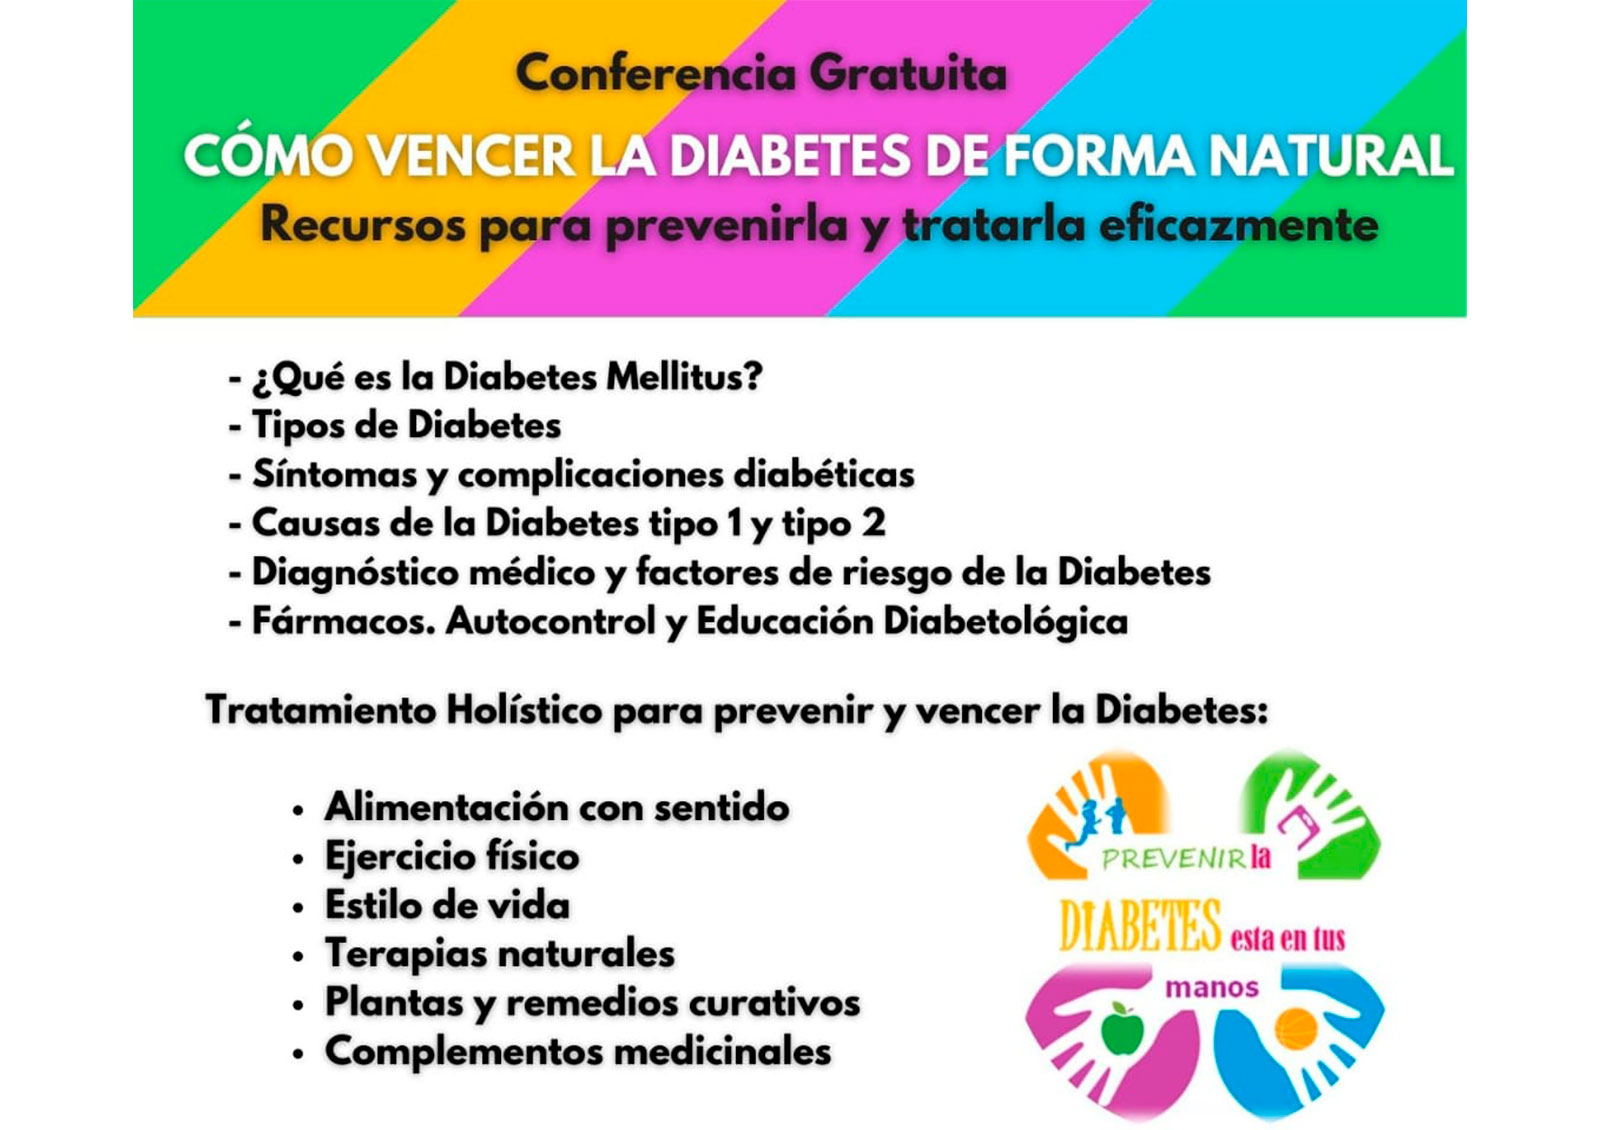 Conferencia - Cómo vencer la Diabetes de Forma Natural. Recursos para prevenirla y tratarla eficazmente.